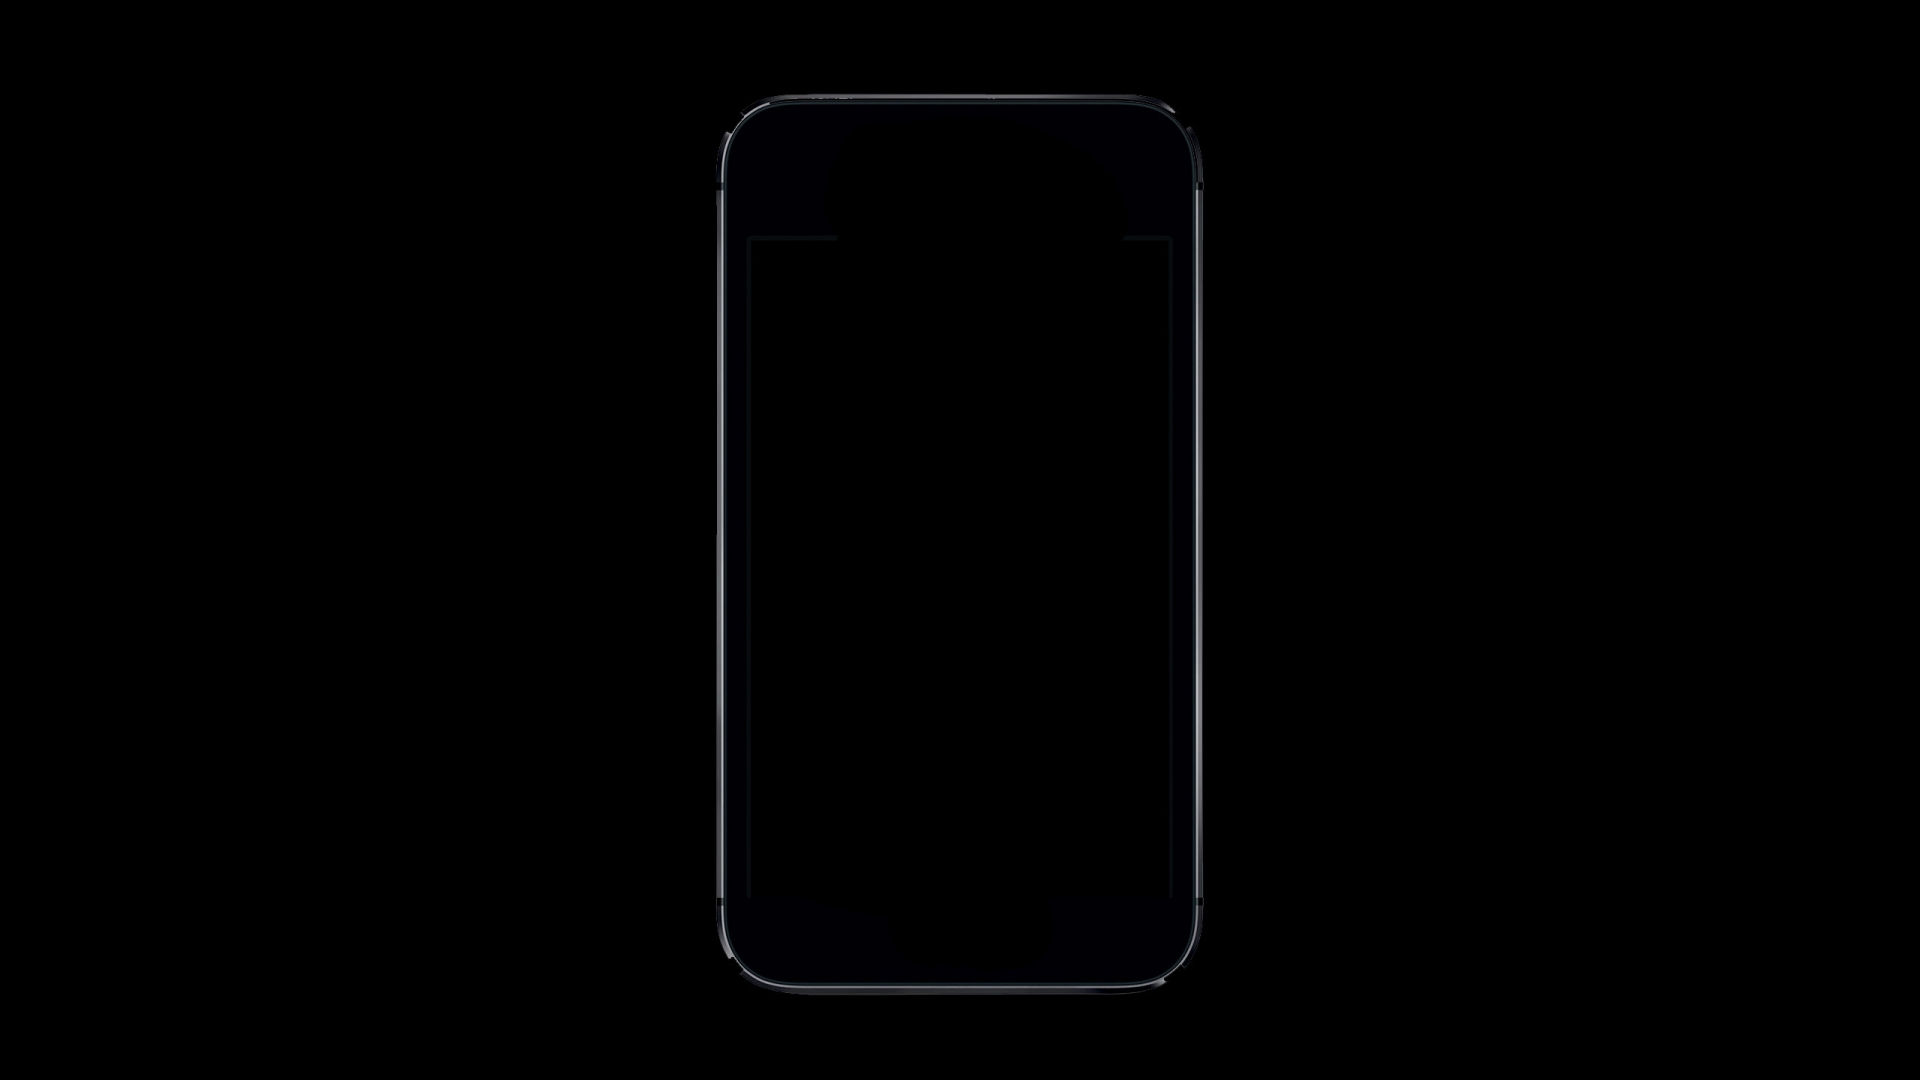 จัดเต็ม iPhone 8 รุ่นใหม่อาจมาพร้อมจอโค้งทั้ง 4 ด้าน ระบบจดจำใบหน้า และอีกเพียบ!